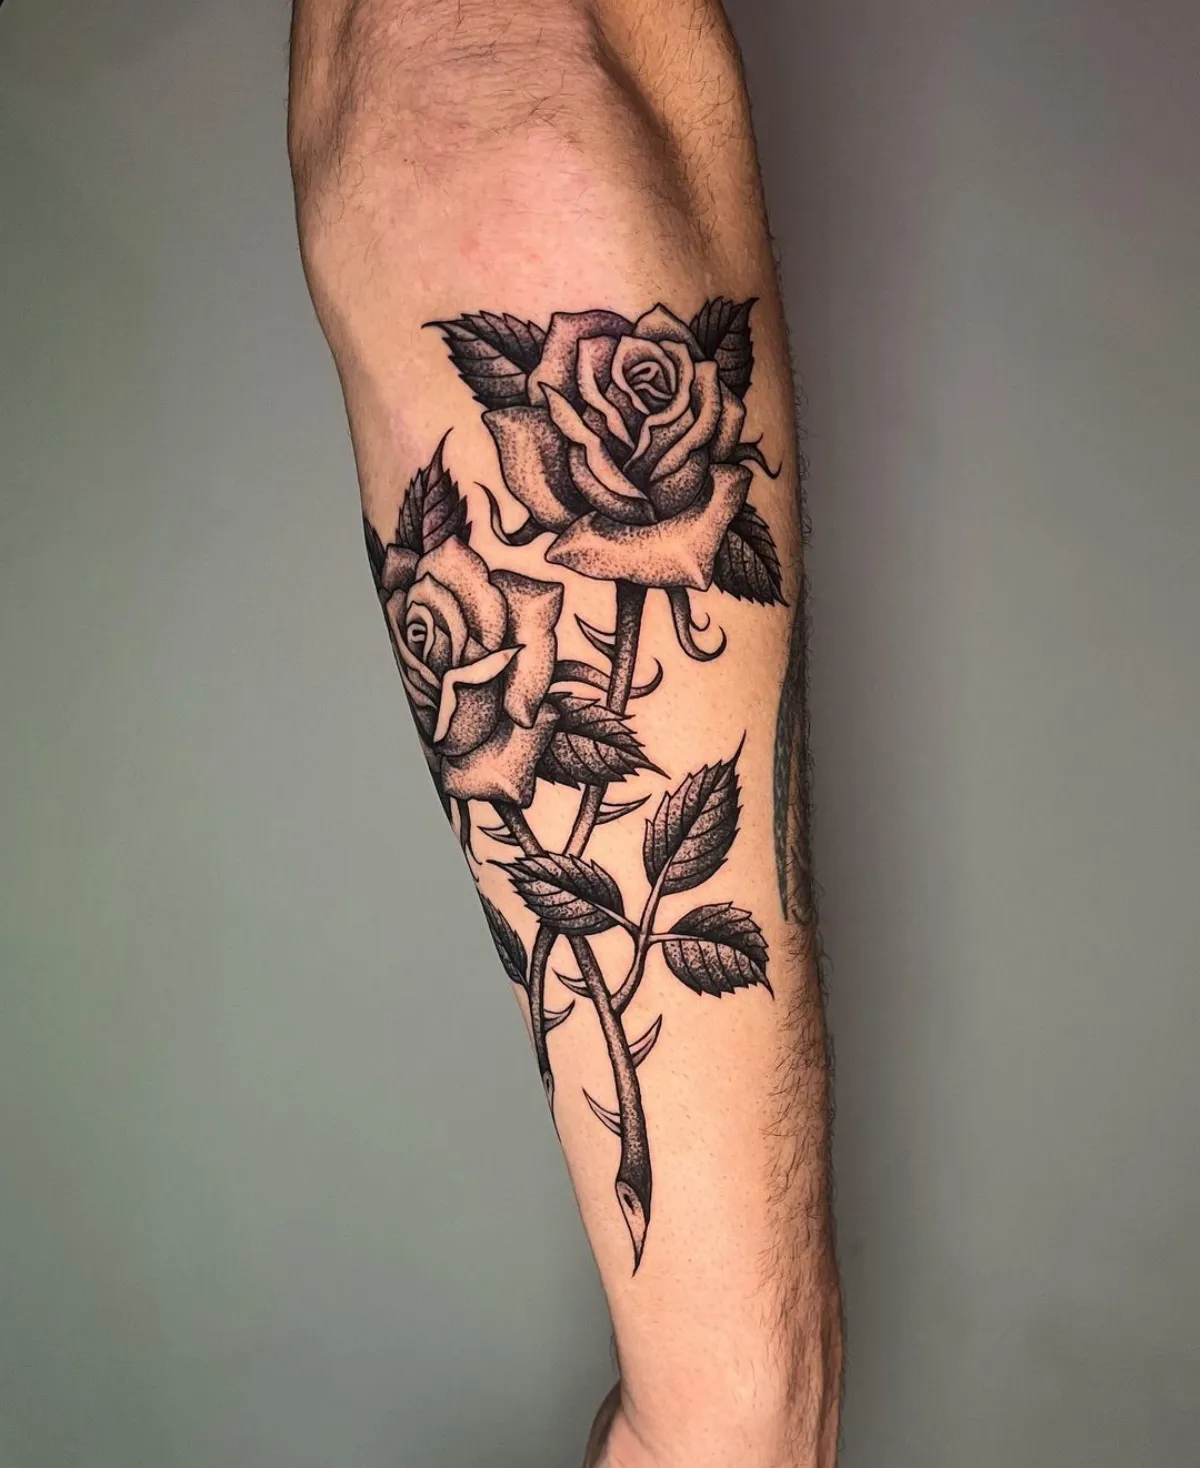 großes unterarm tattoo zwei rosen realistisch